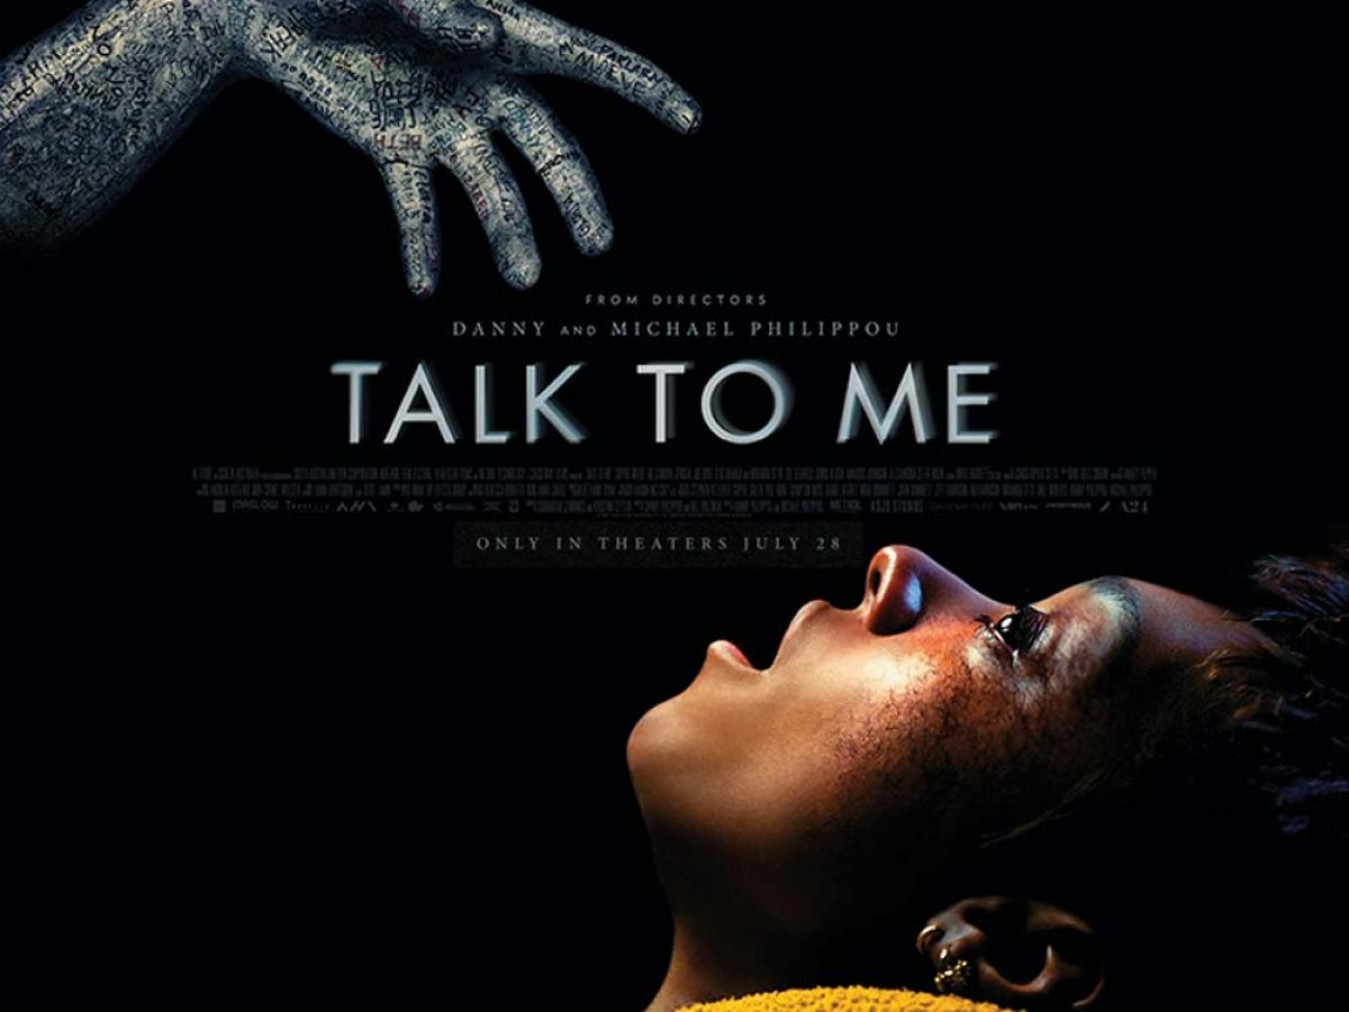 Fale Comigo: veja trailer, sinopse, elenco e data de estreia de filme de  terror